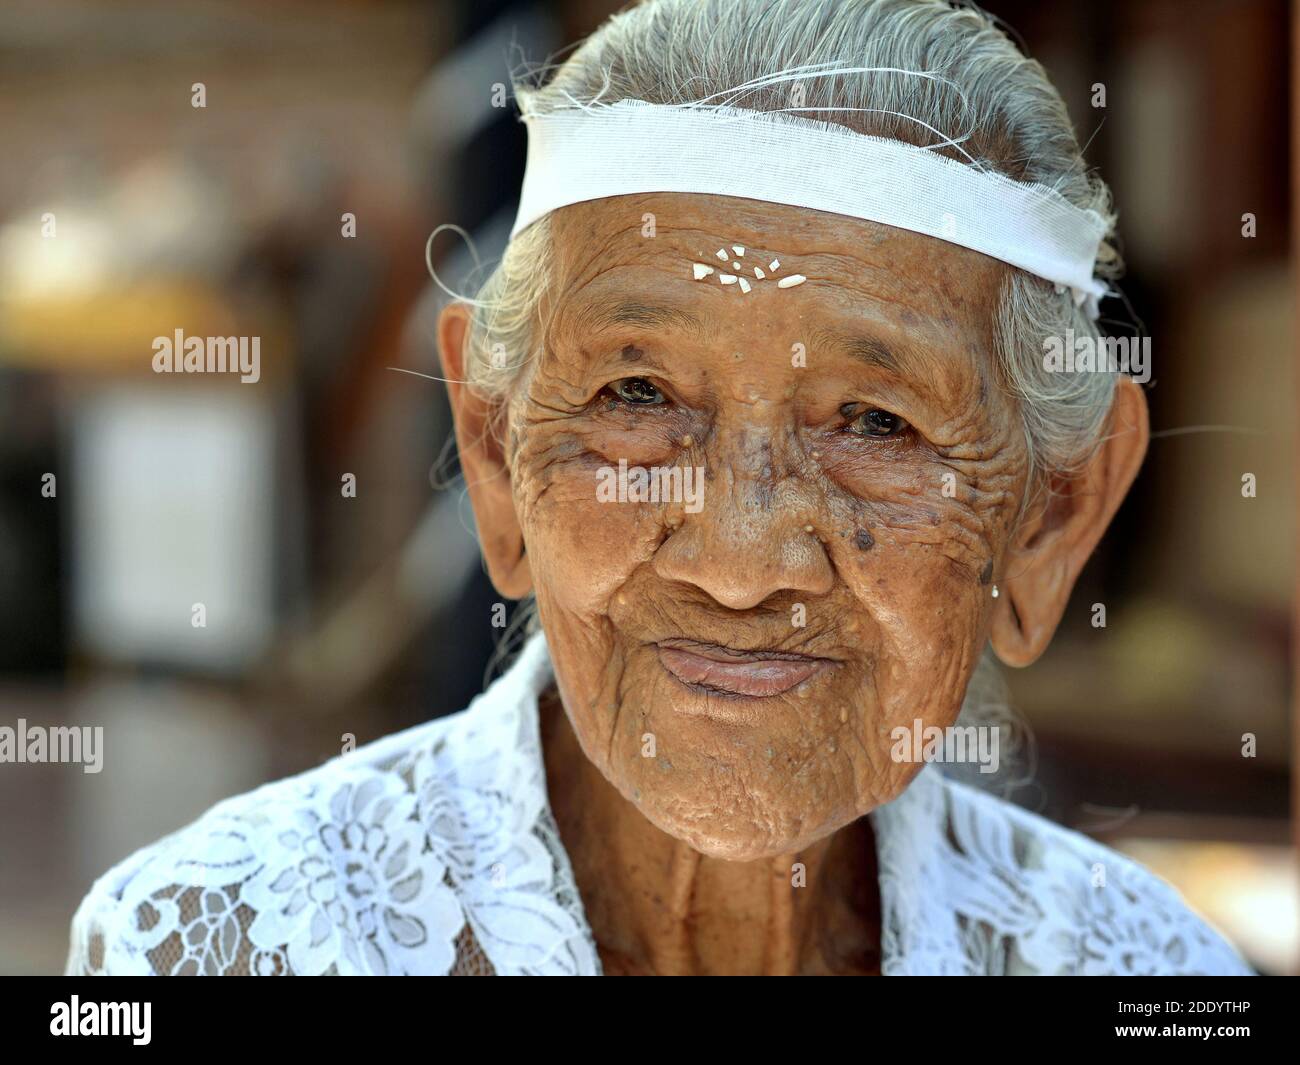 La vieille femme indonésienne balinaise avec des grains de riz sur son front porte un chemisier traditionnel blanc kebaya lors d'une cérémonie religieuse hindoue. Banque D'Images